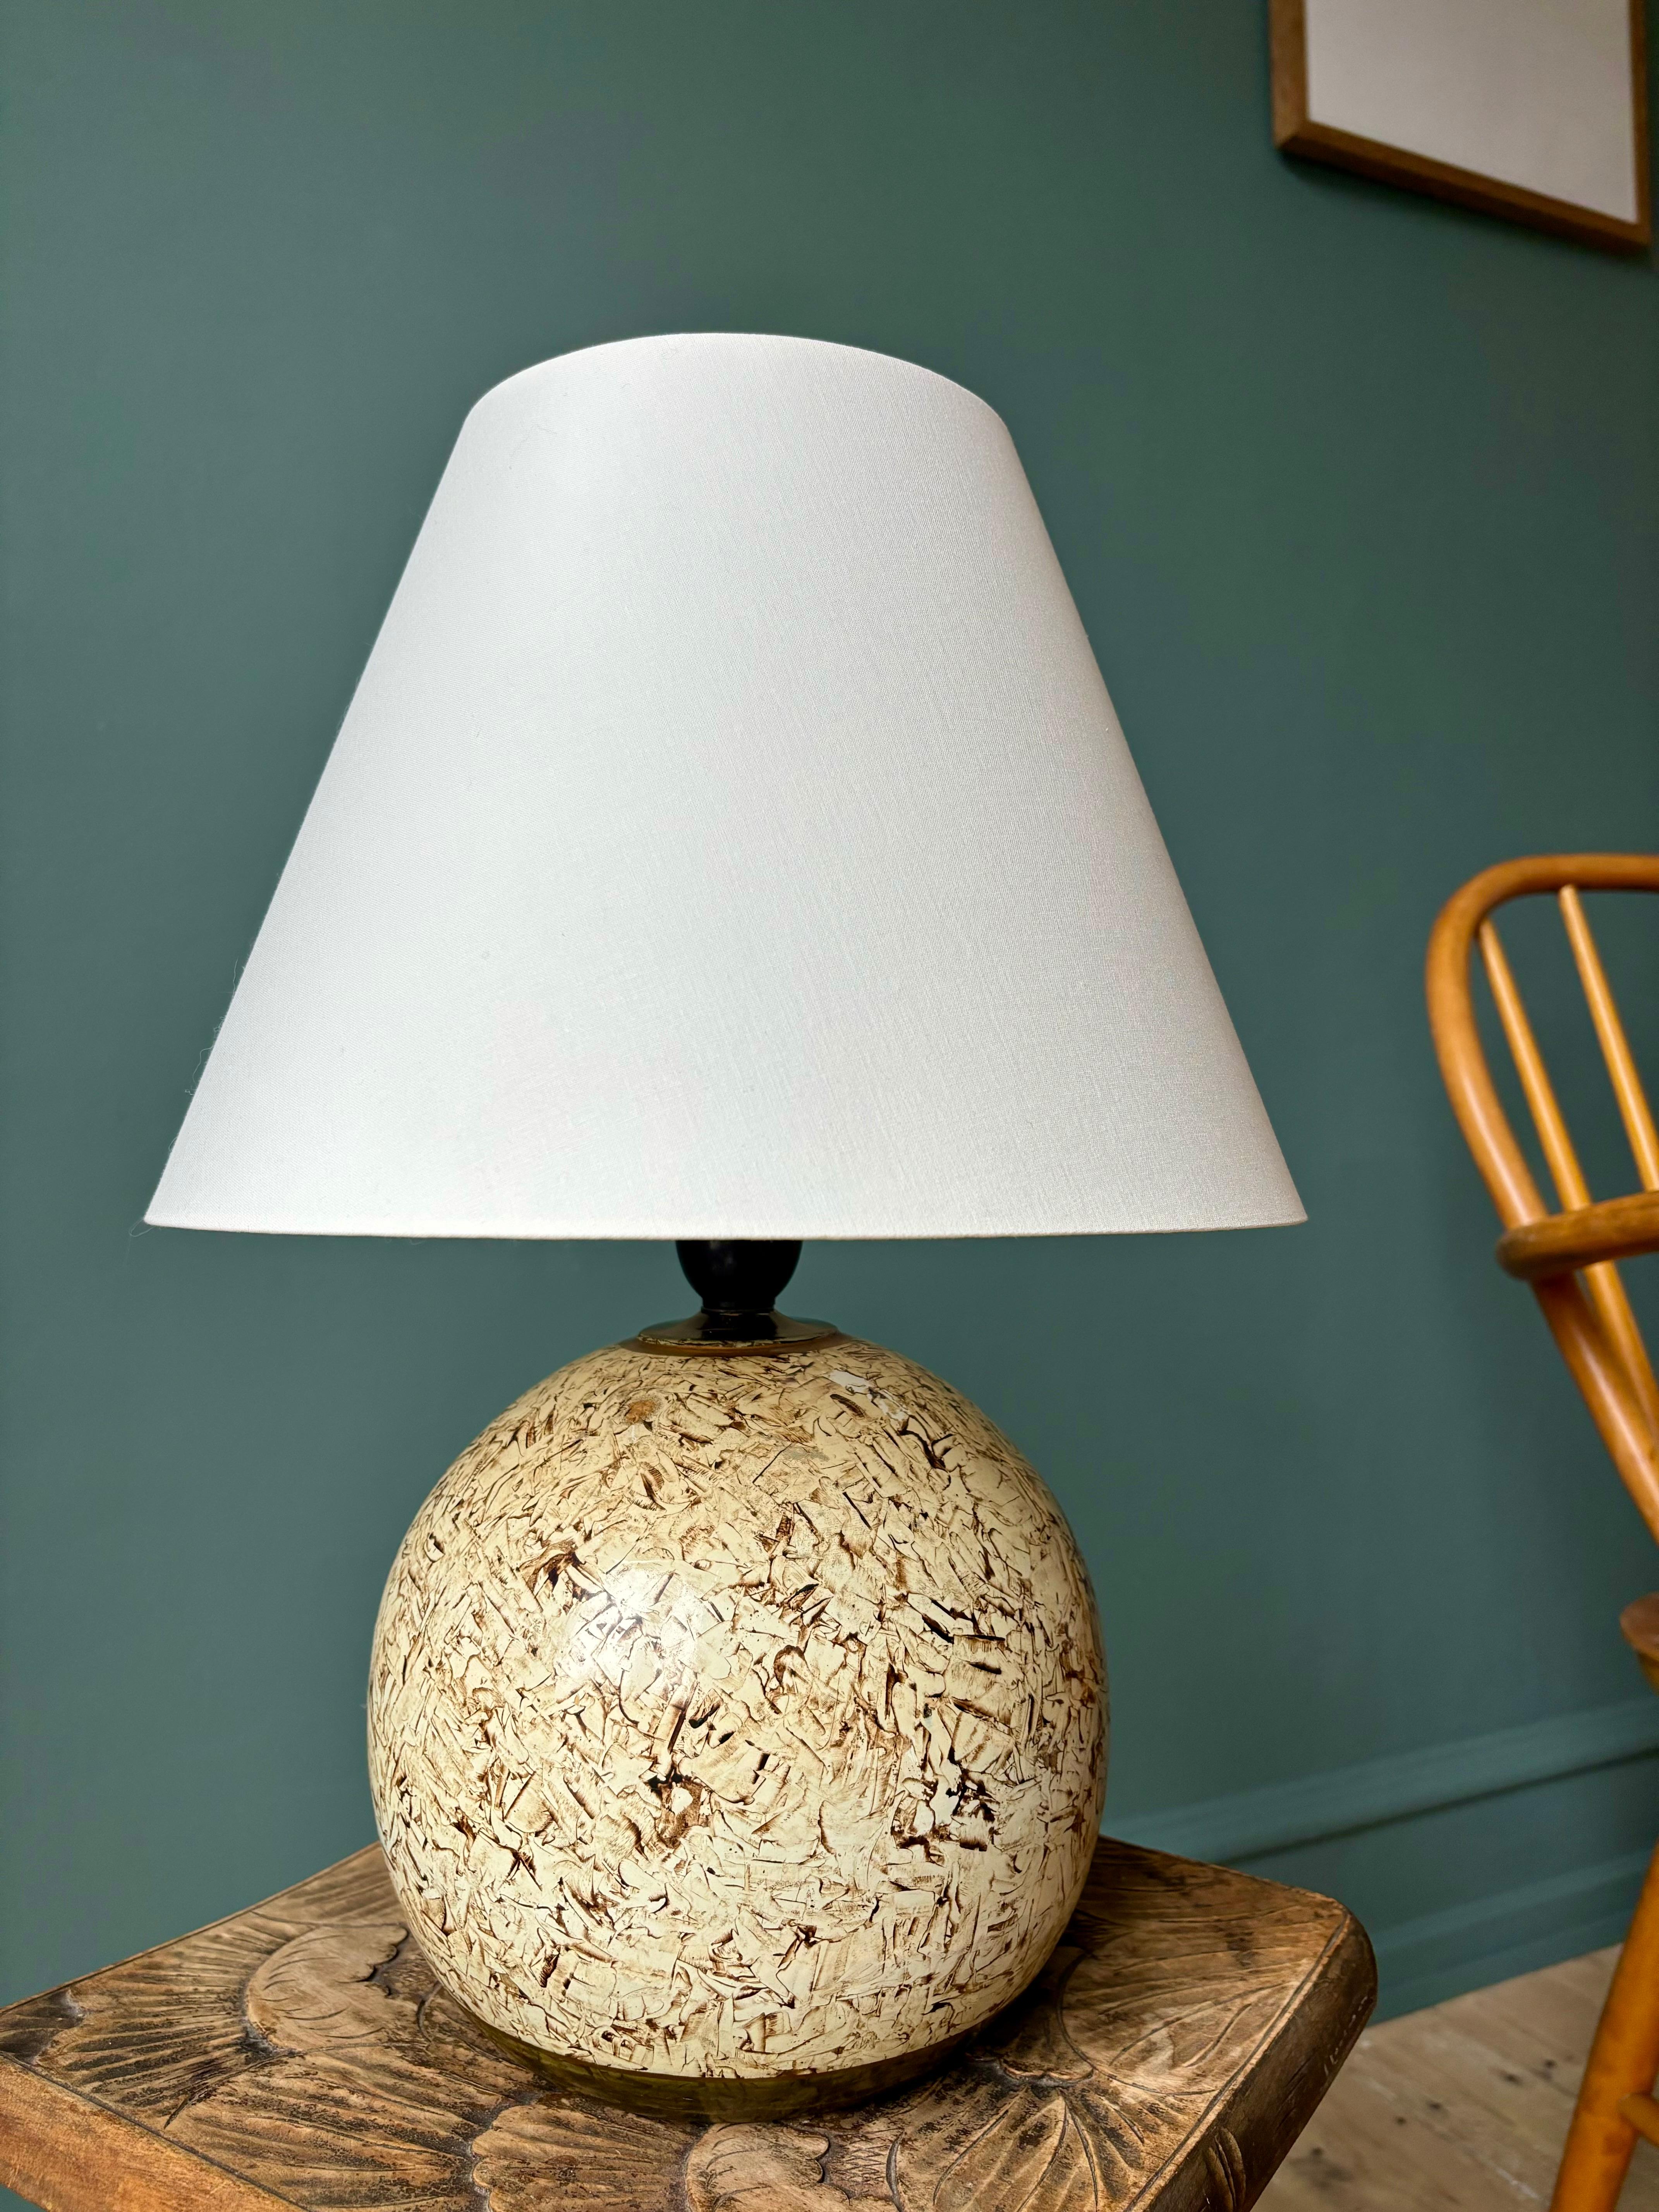 Außergewöhnliche kugelförmige Tischlampe aus Keramik in warmen Braun-, Hellgelb-, Olivgrün- und Goldtönen. Aufwändig handbemaltes organisches Dekor, das sich wie Papier anfühlt. Neu verdrahtet mit Originalarmatur mit Schalter. Großartiger